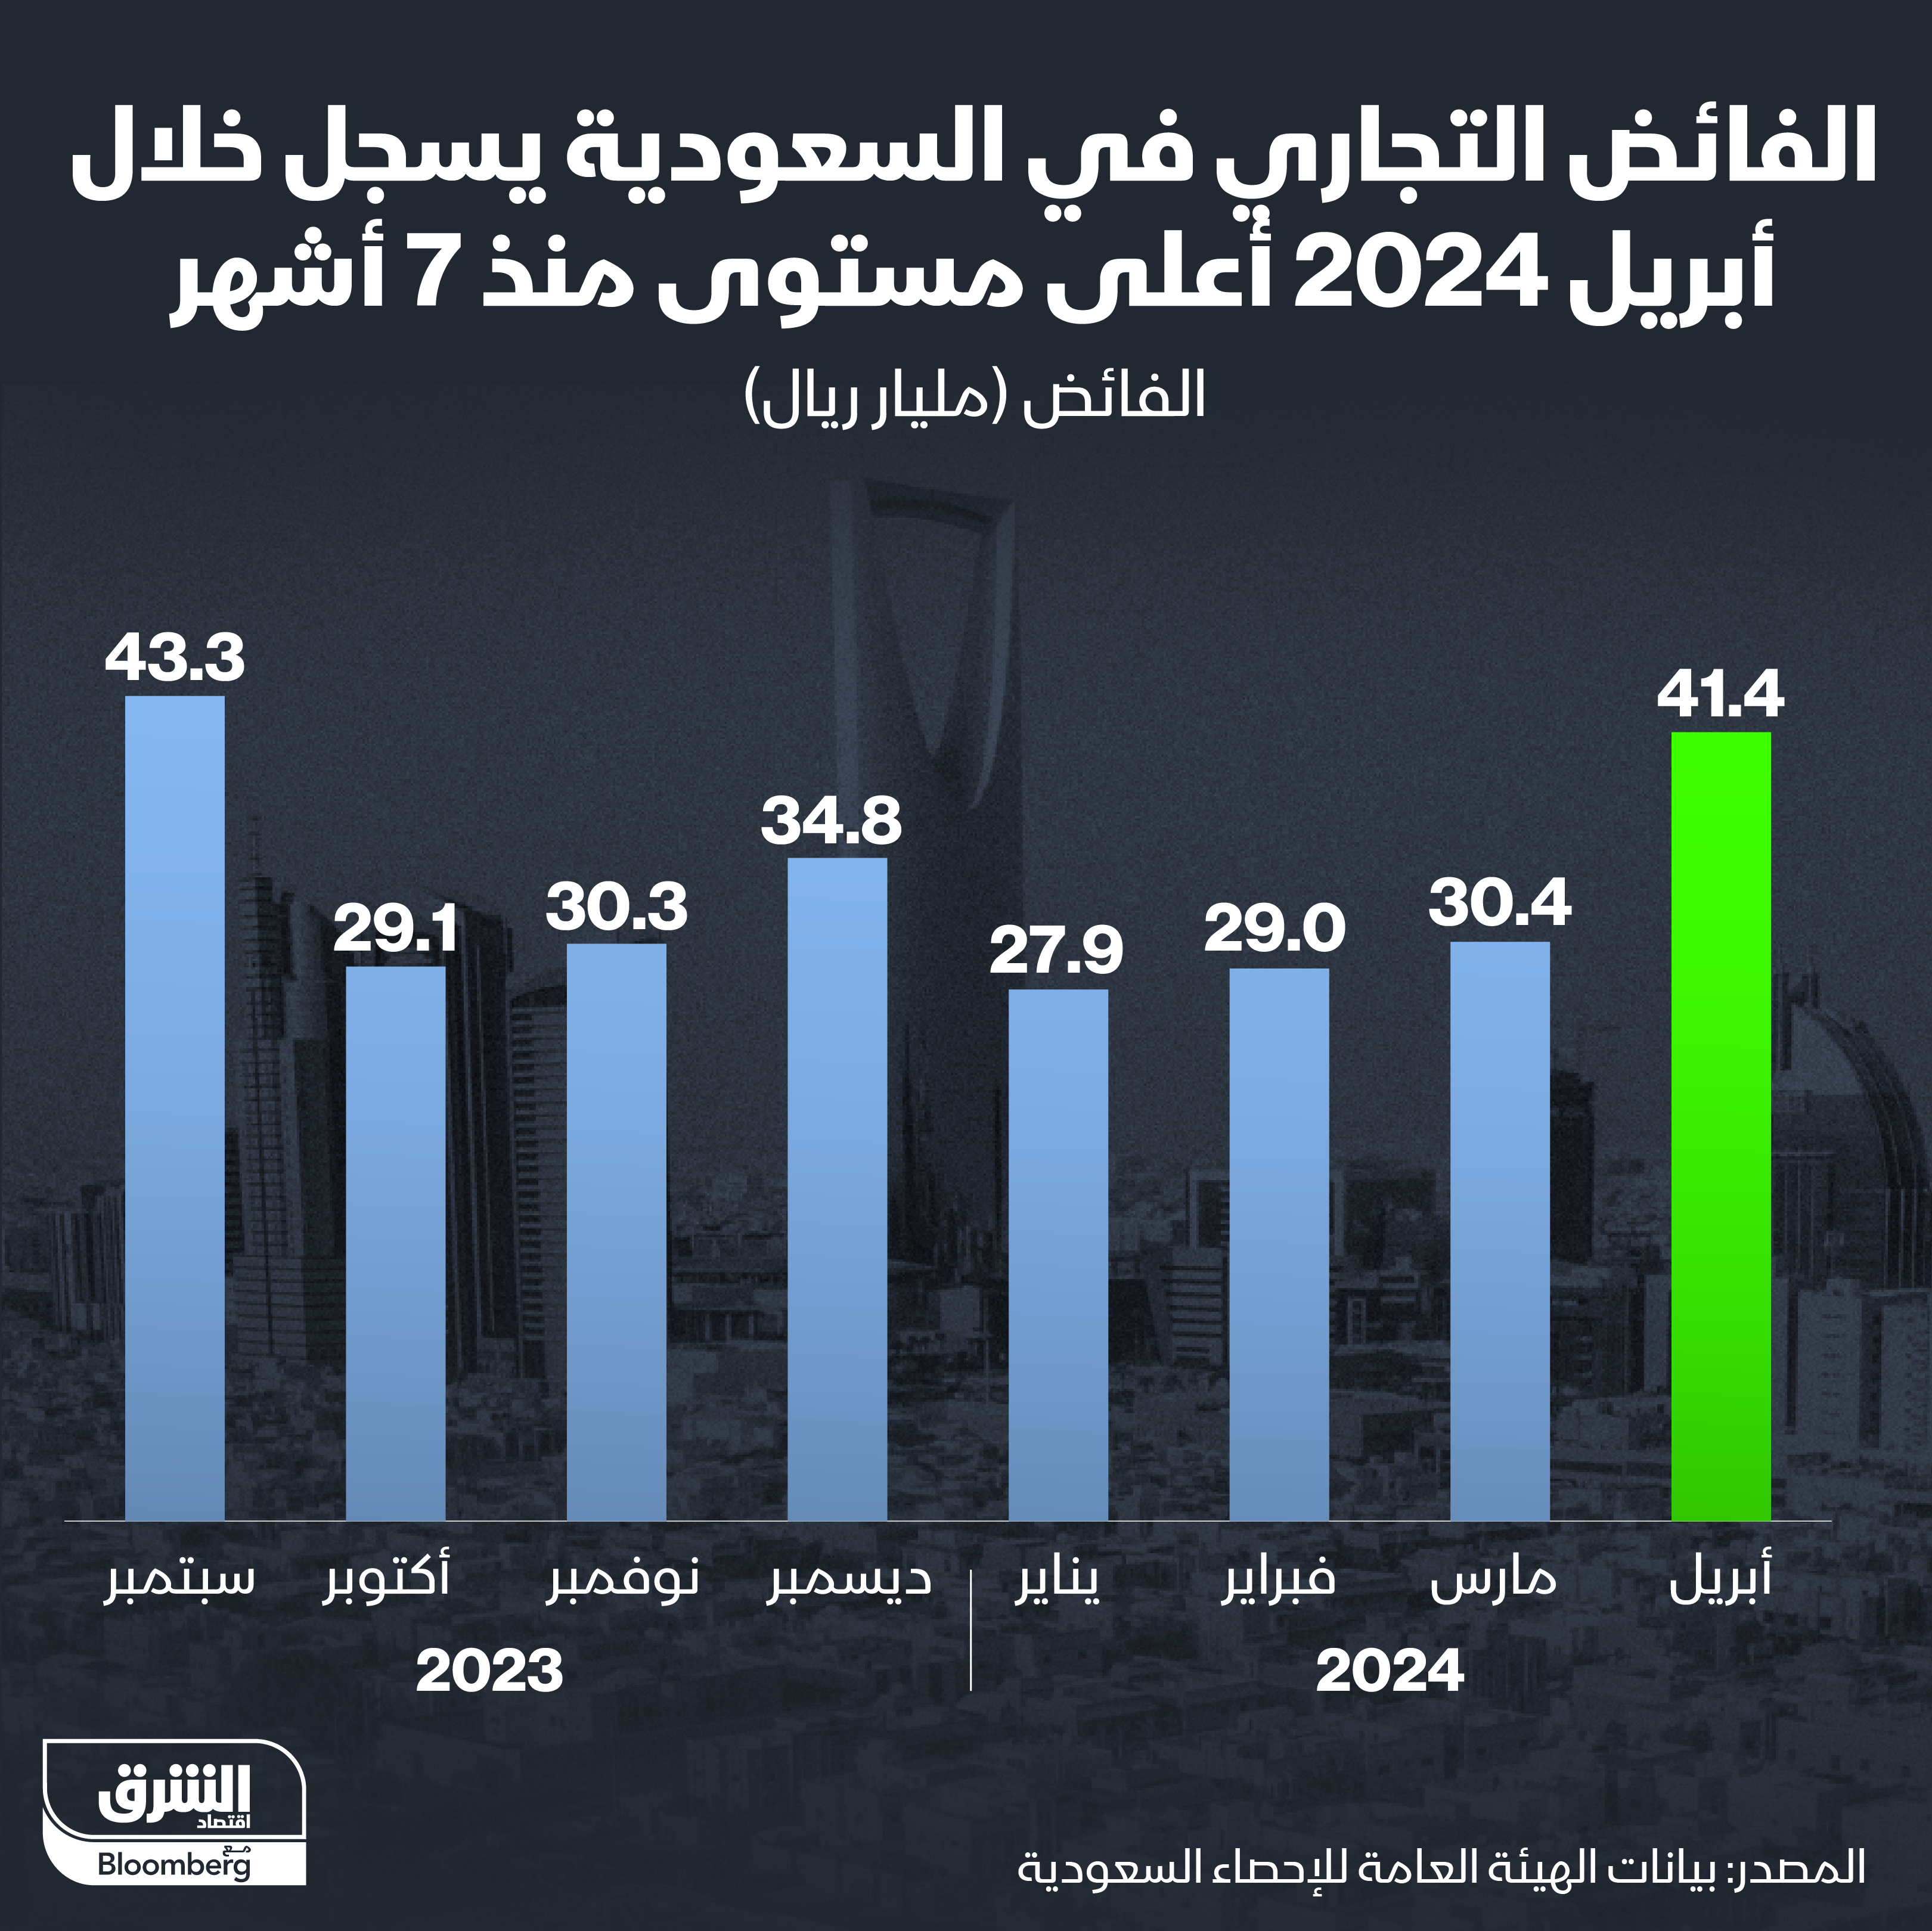 الفائض التجاري للسعودية منذ سبتمبر 2023